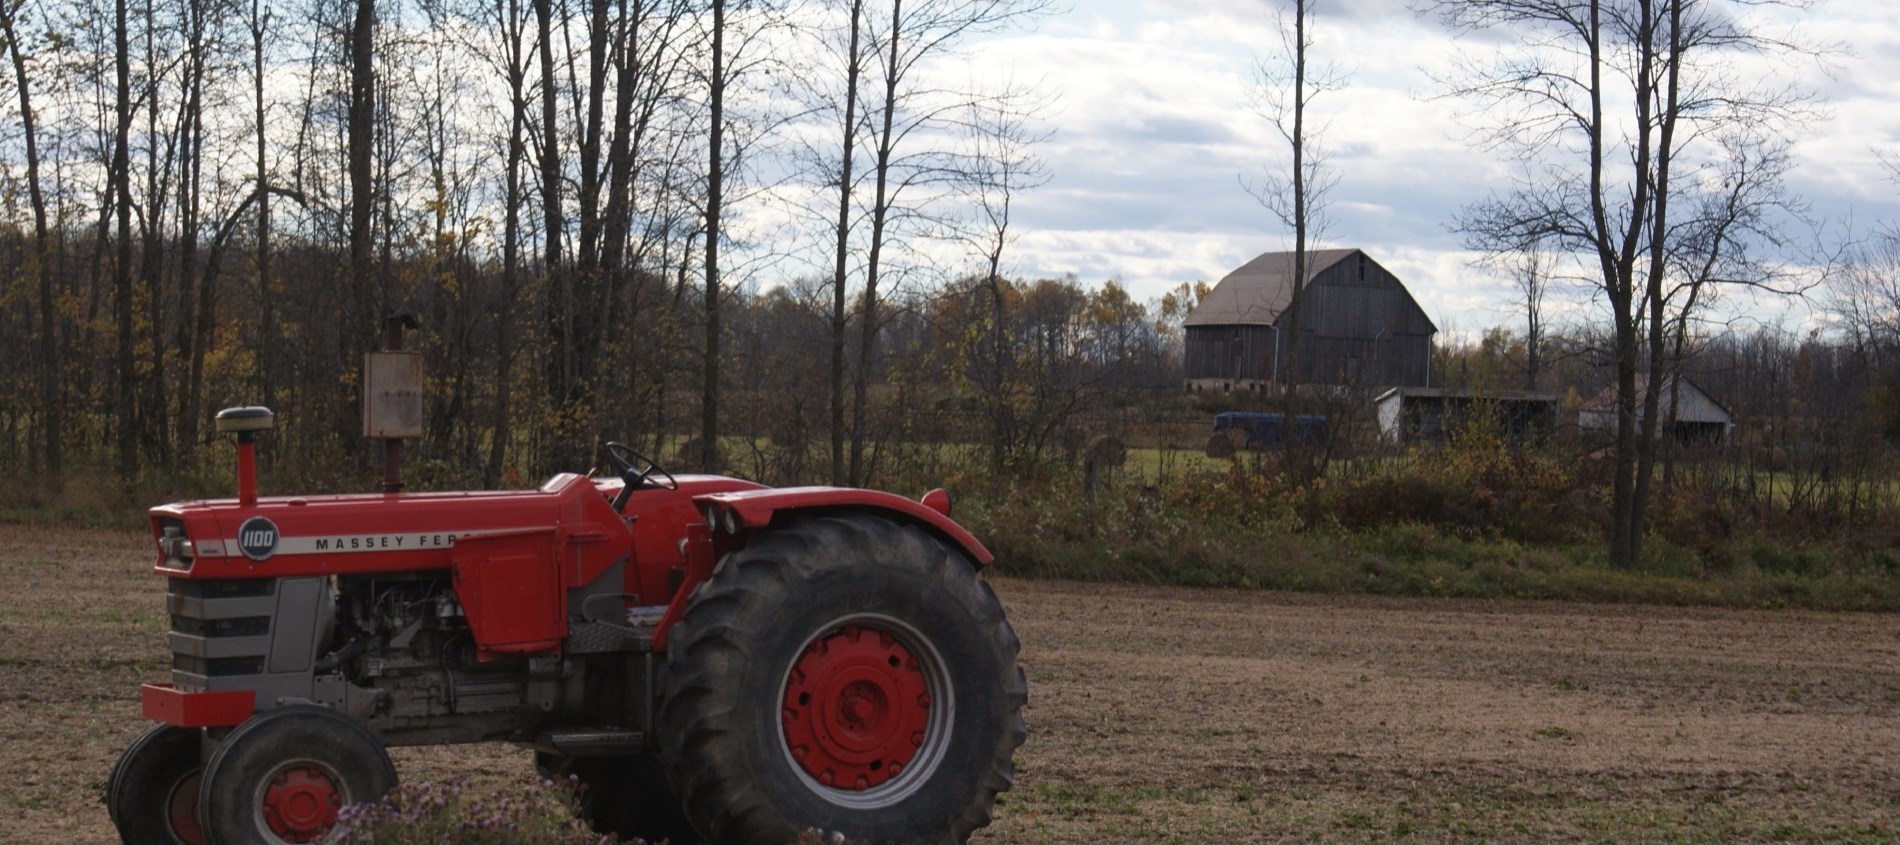 Tractor in a farmer's field